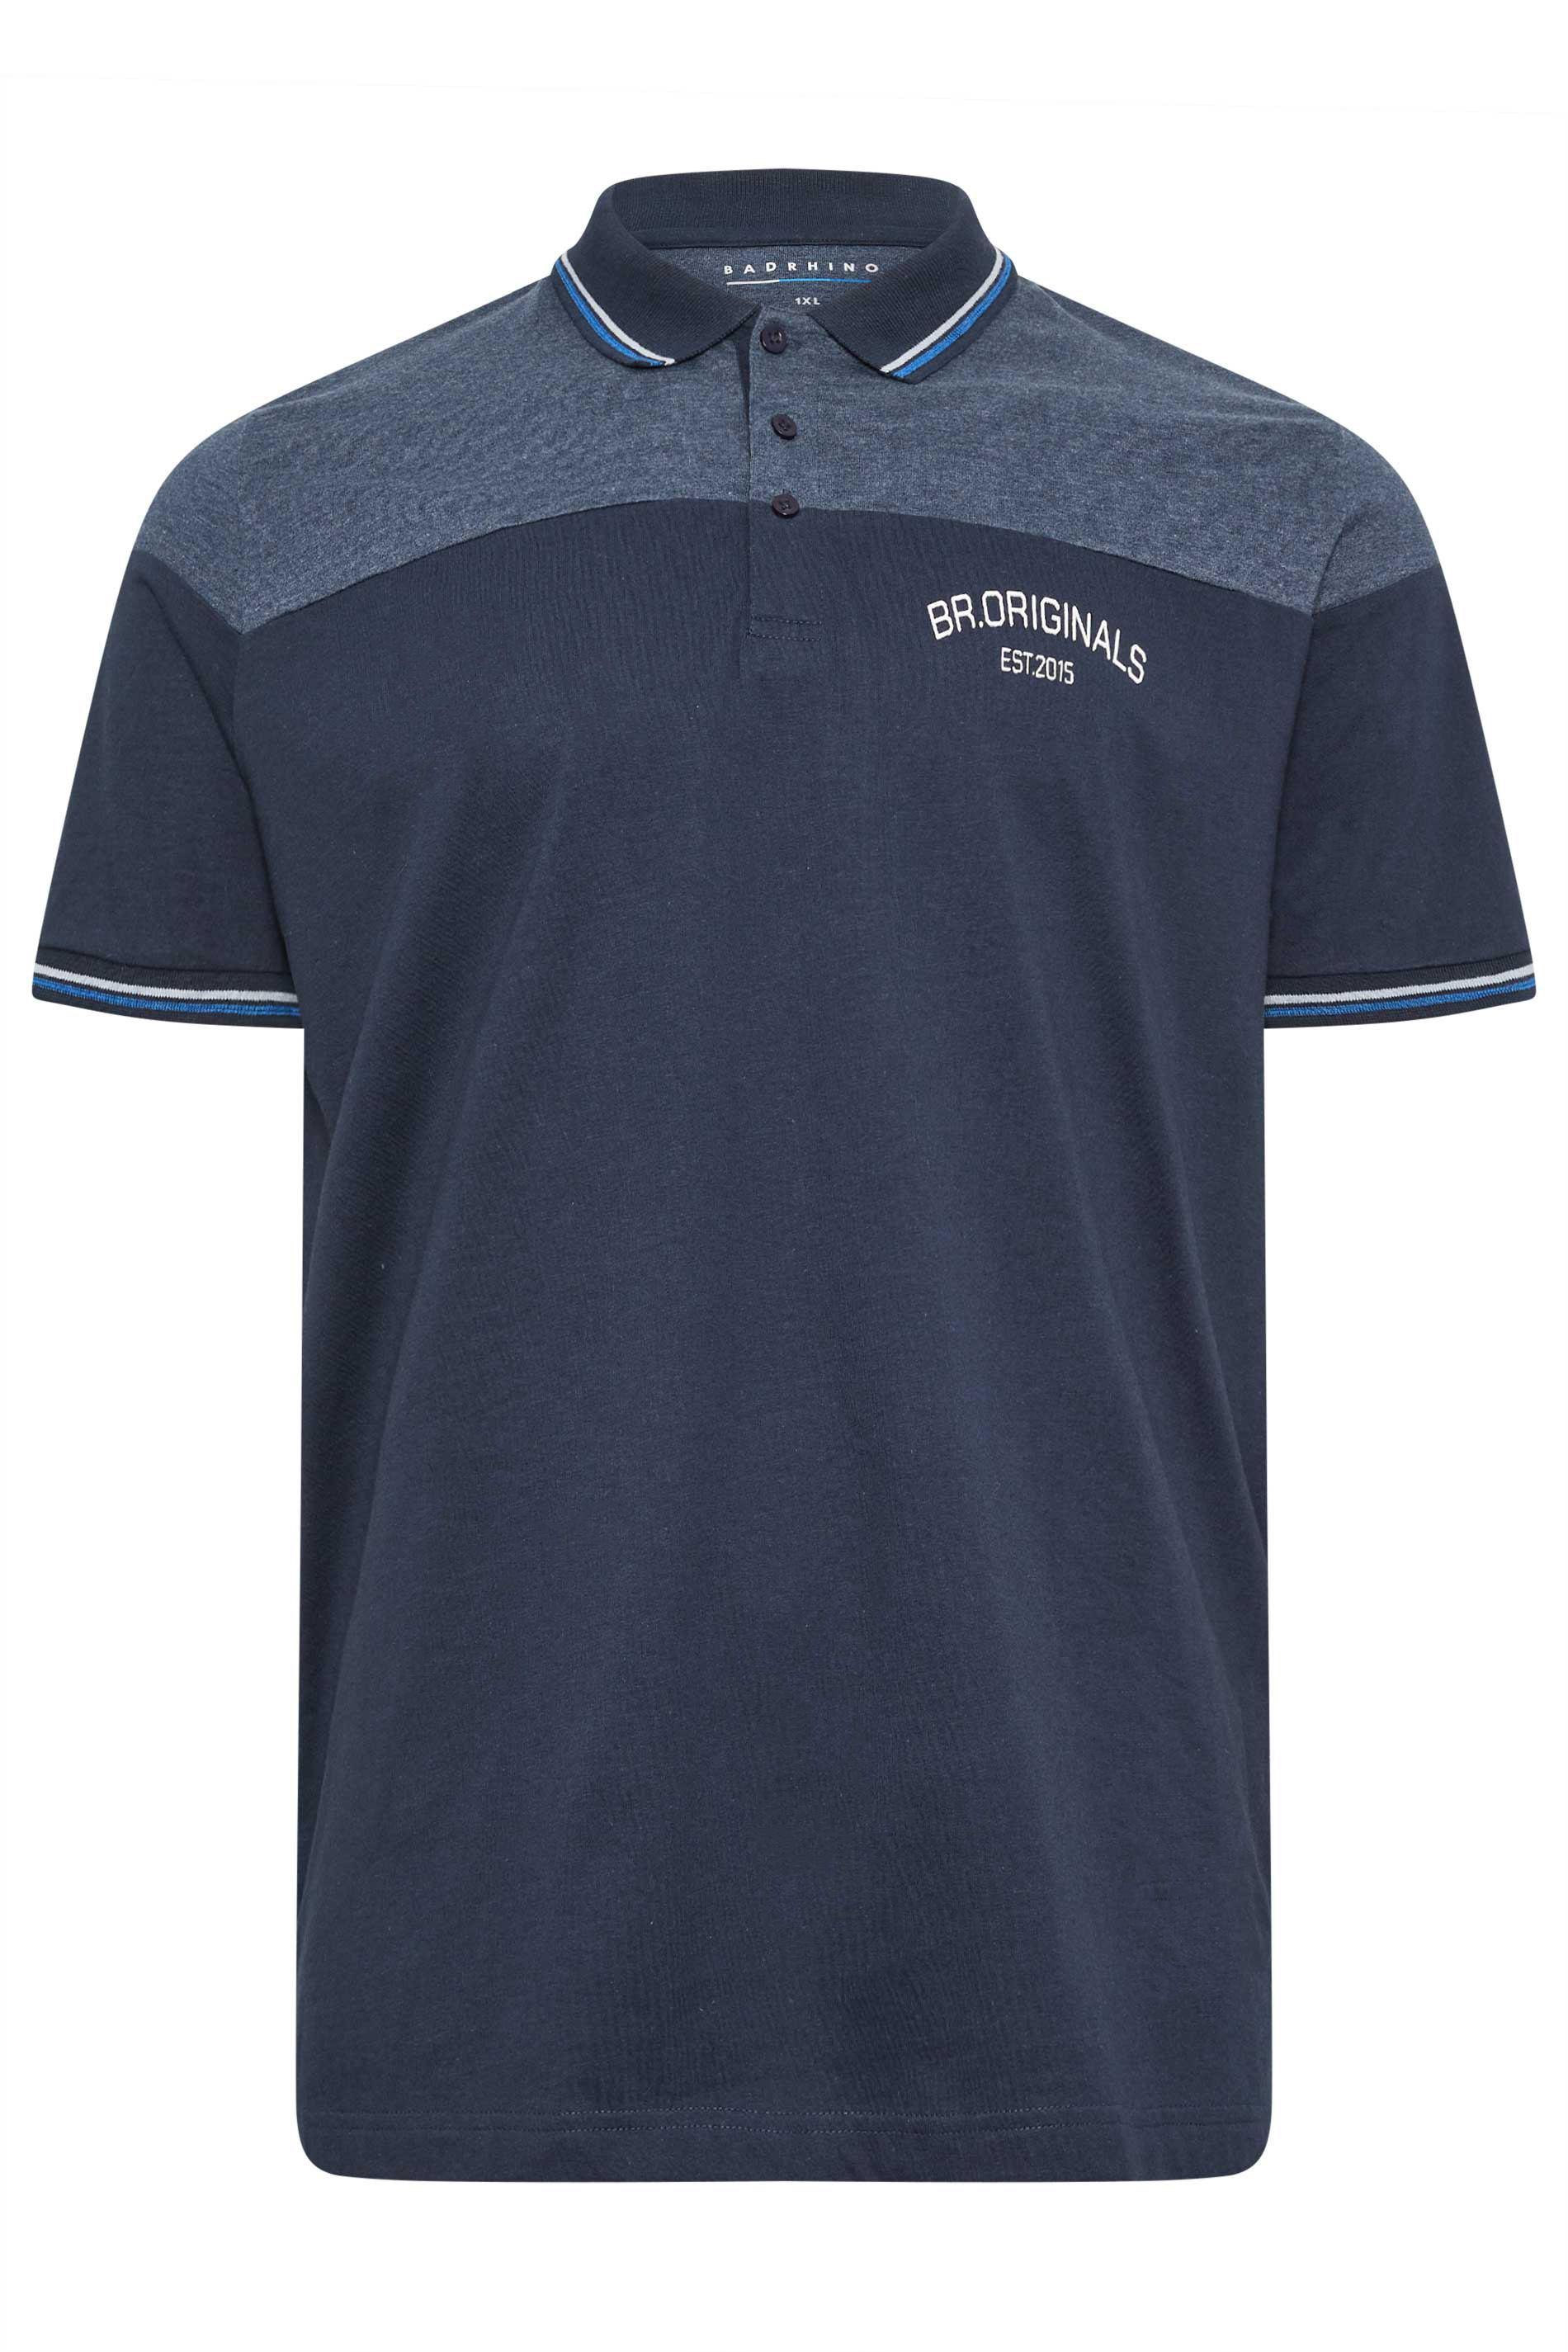 BadRhino Navy Blue 'Originals' Cut & Sew Polo Shirt | BadRhino 2